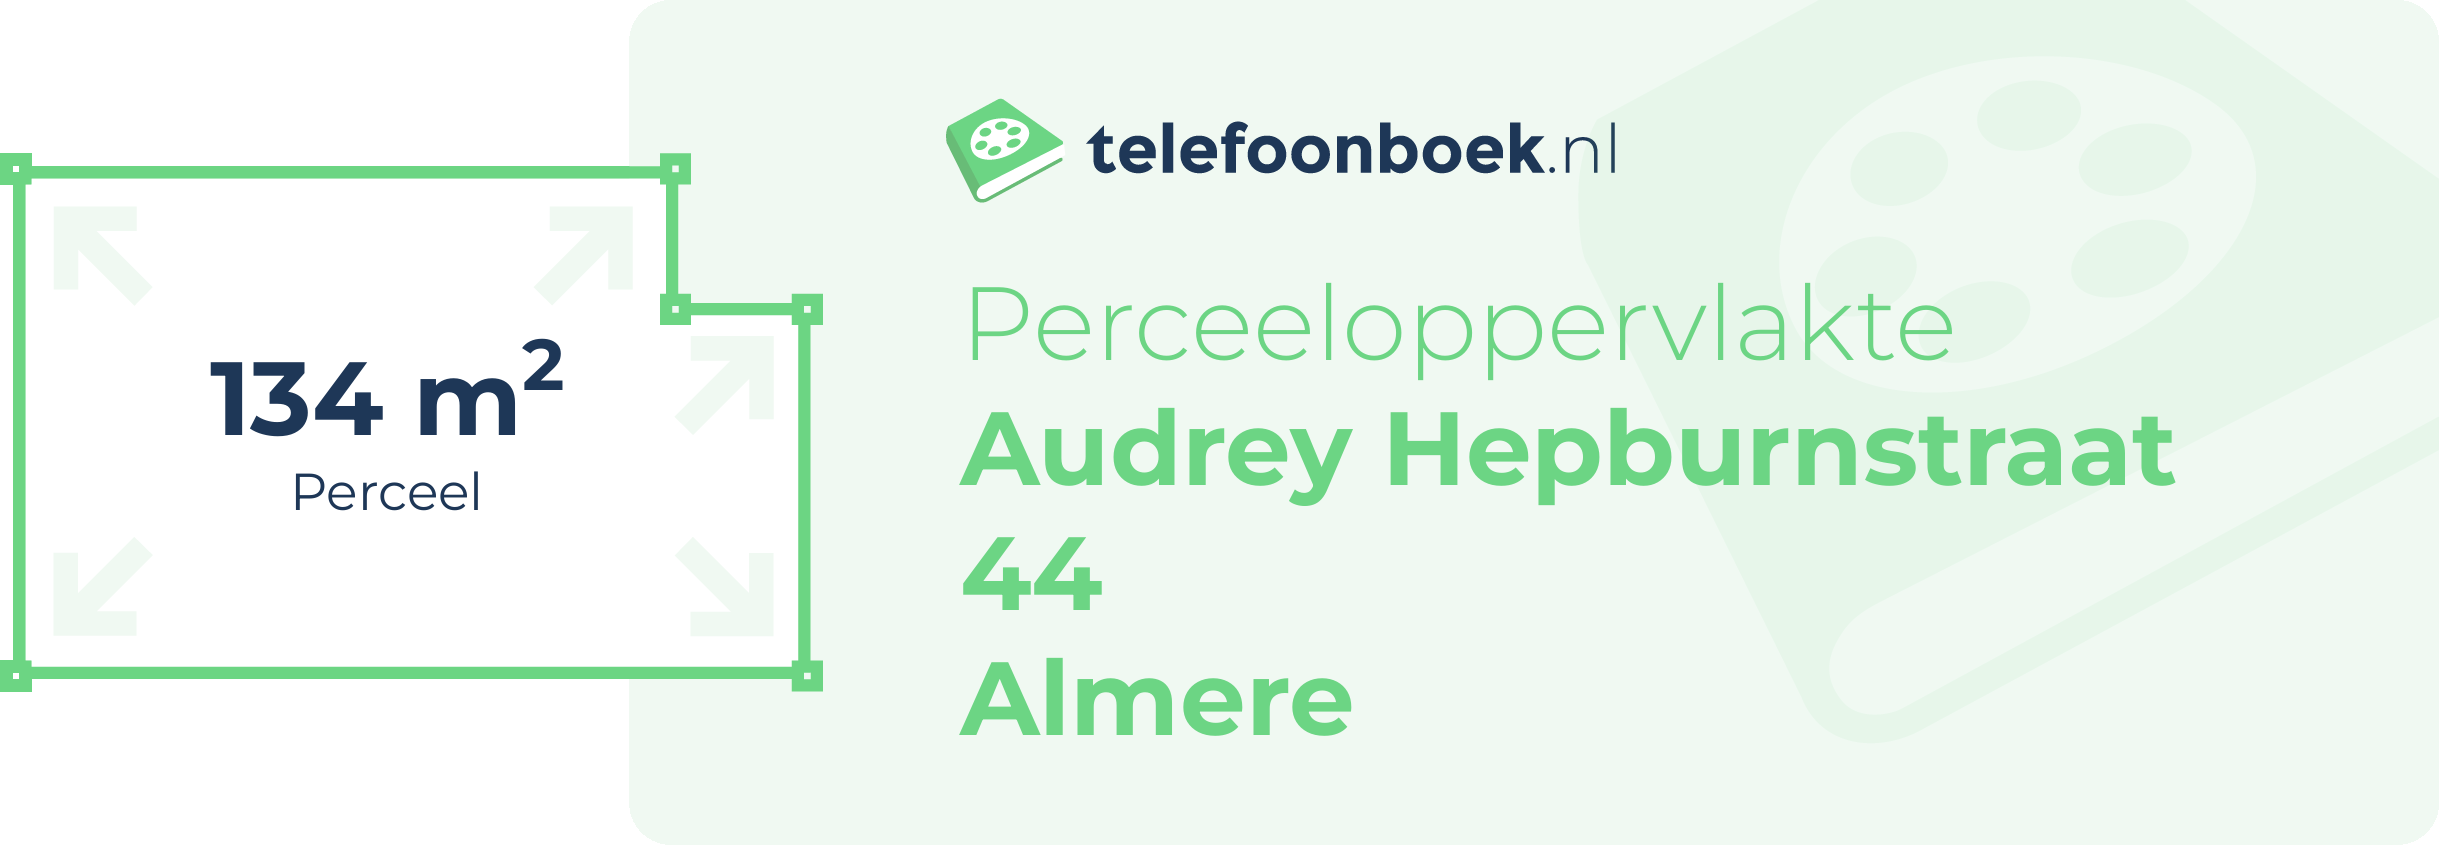 Perceeloppervlakte Audrey Hepburnstraat 44 Almere